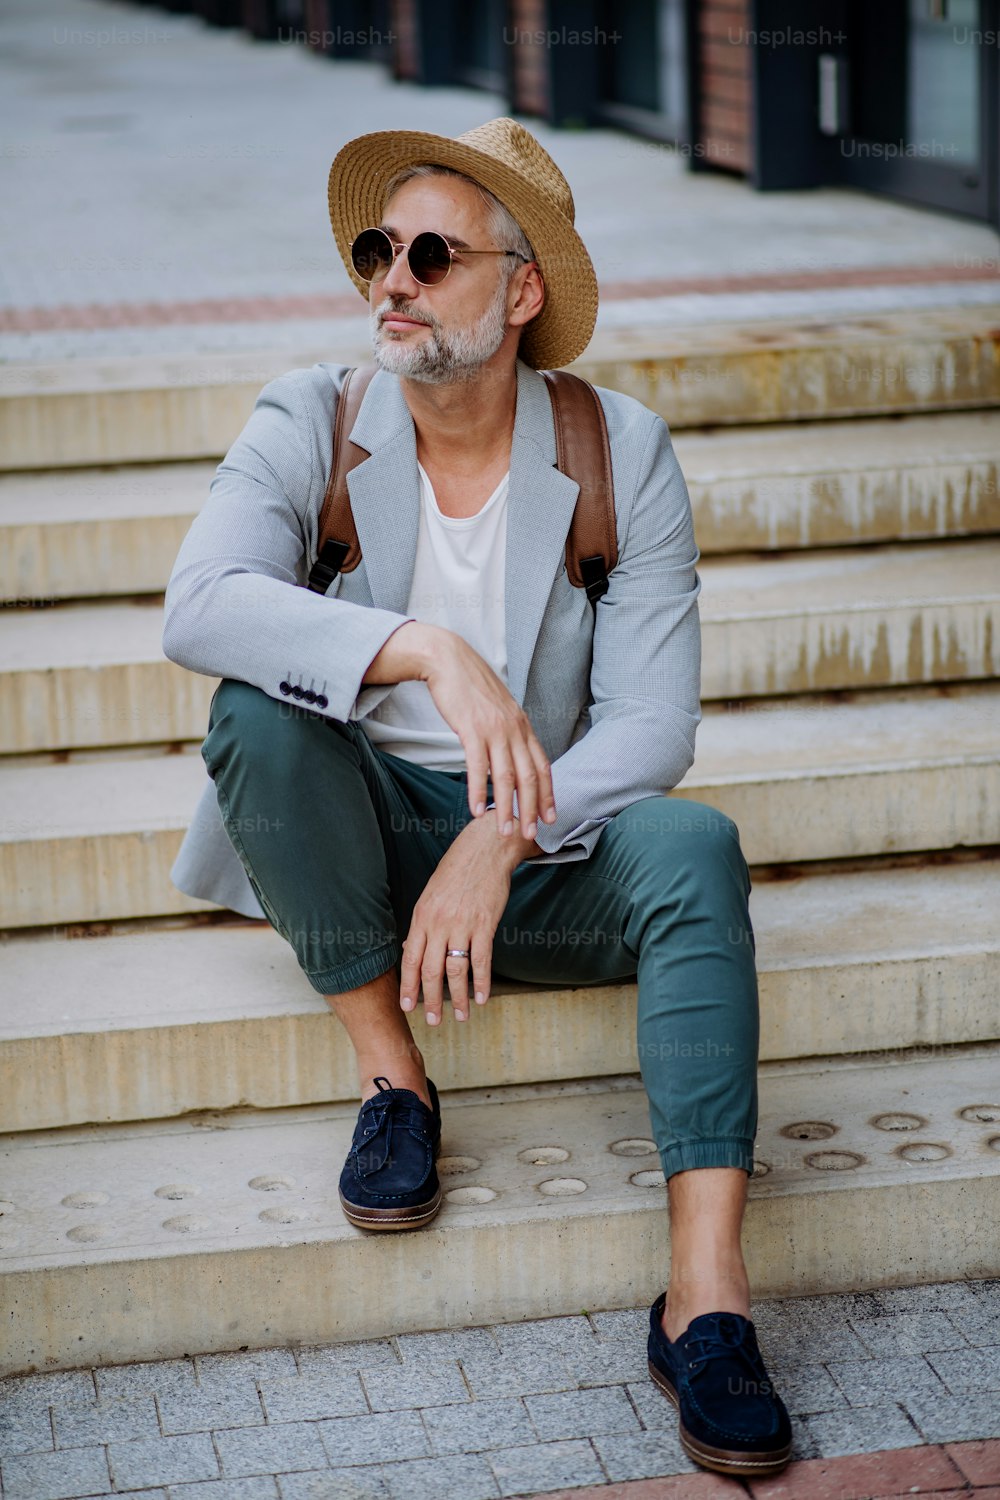 밀짚모자와 배낭을 메고 계단에 앉아 있는 자신감 넘치는 남자, 여름에 캐주얼한 옷을 입고 출근하는 사업가.